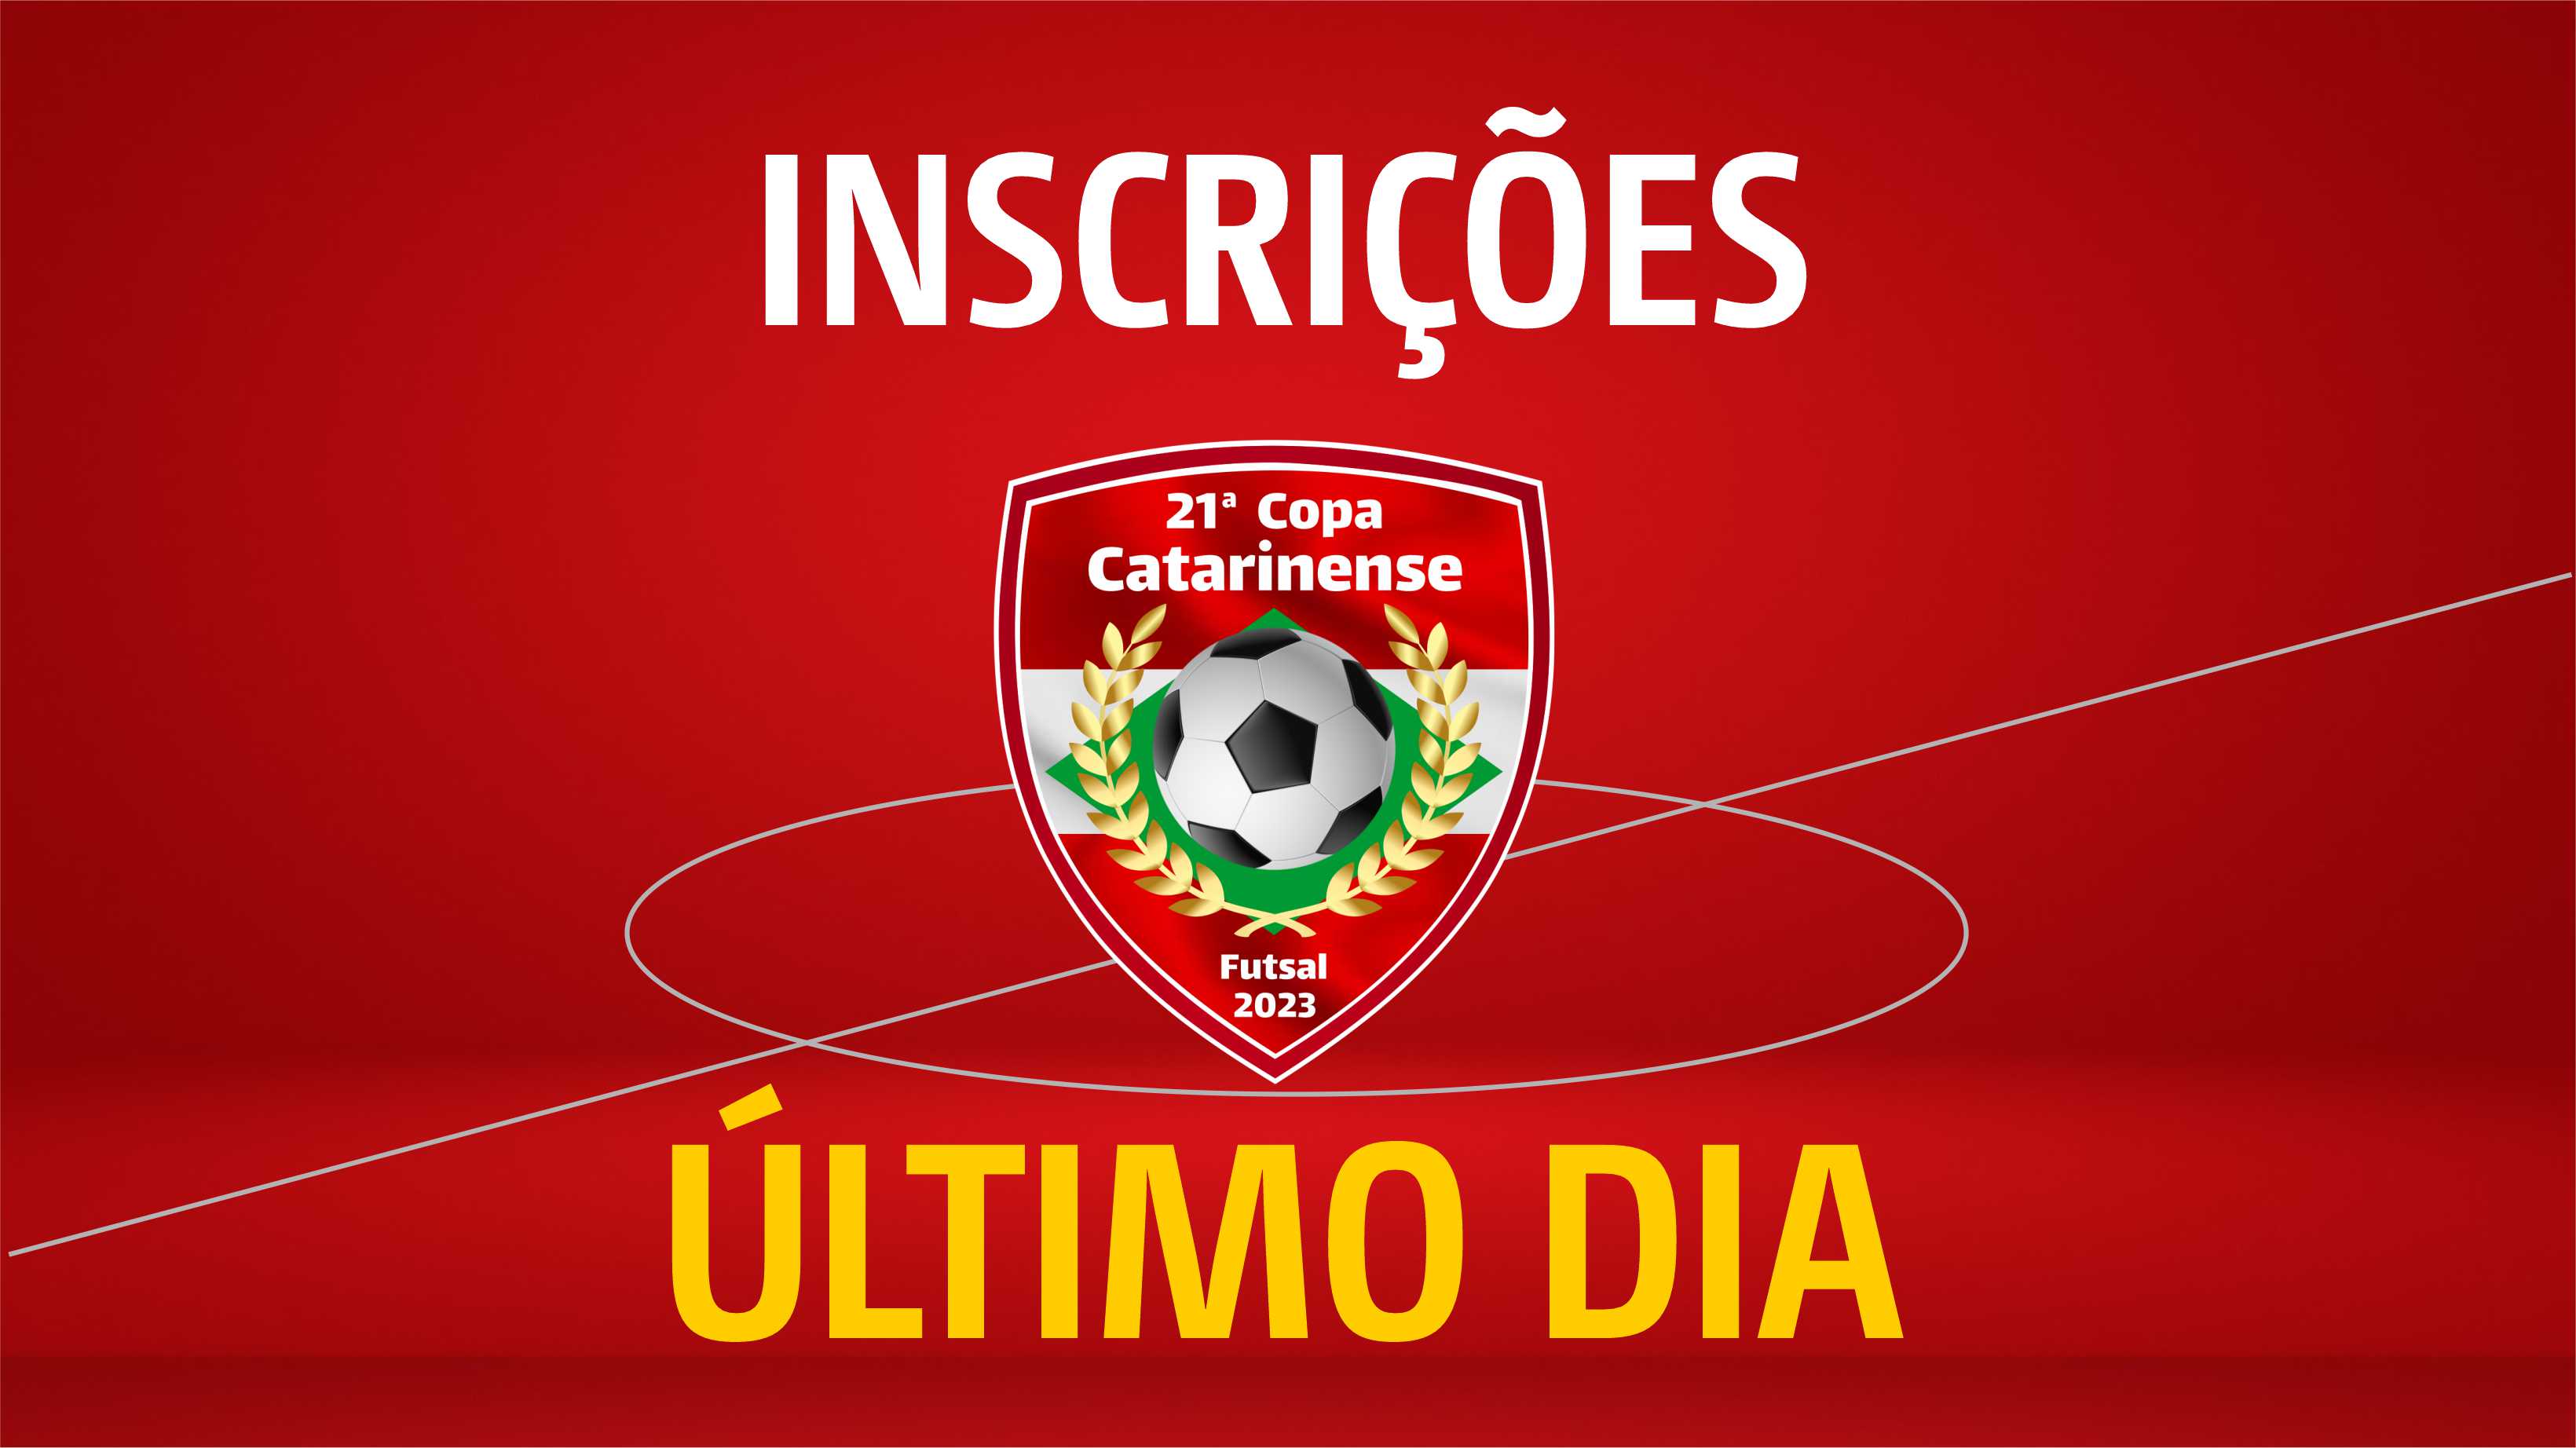 Copa Catarinense encerrou inscrições ontem